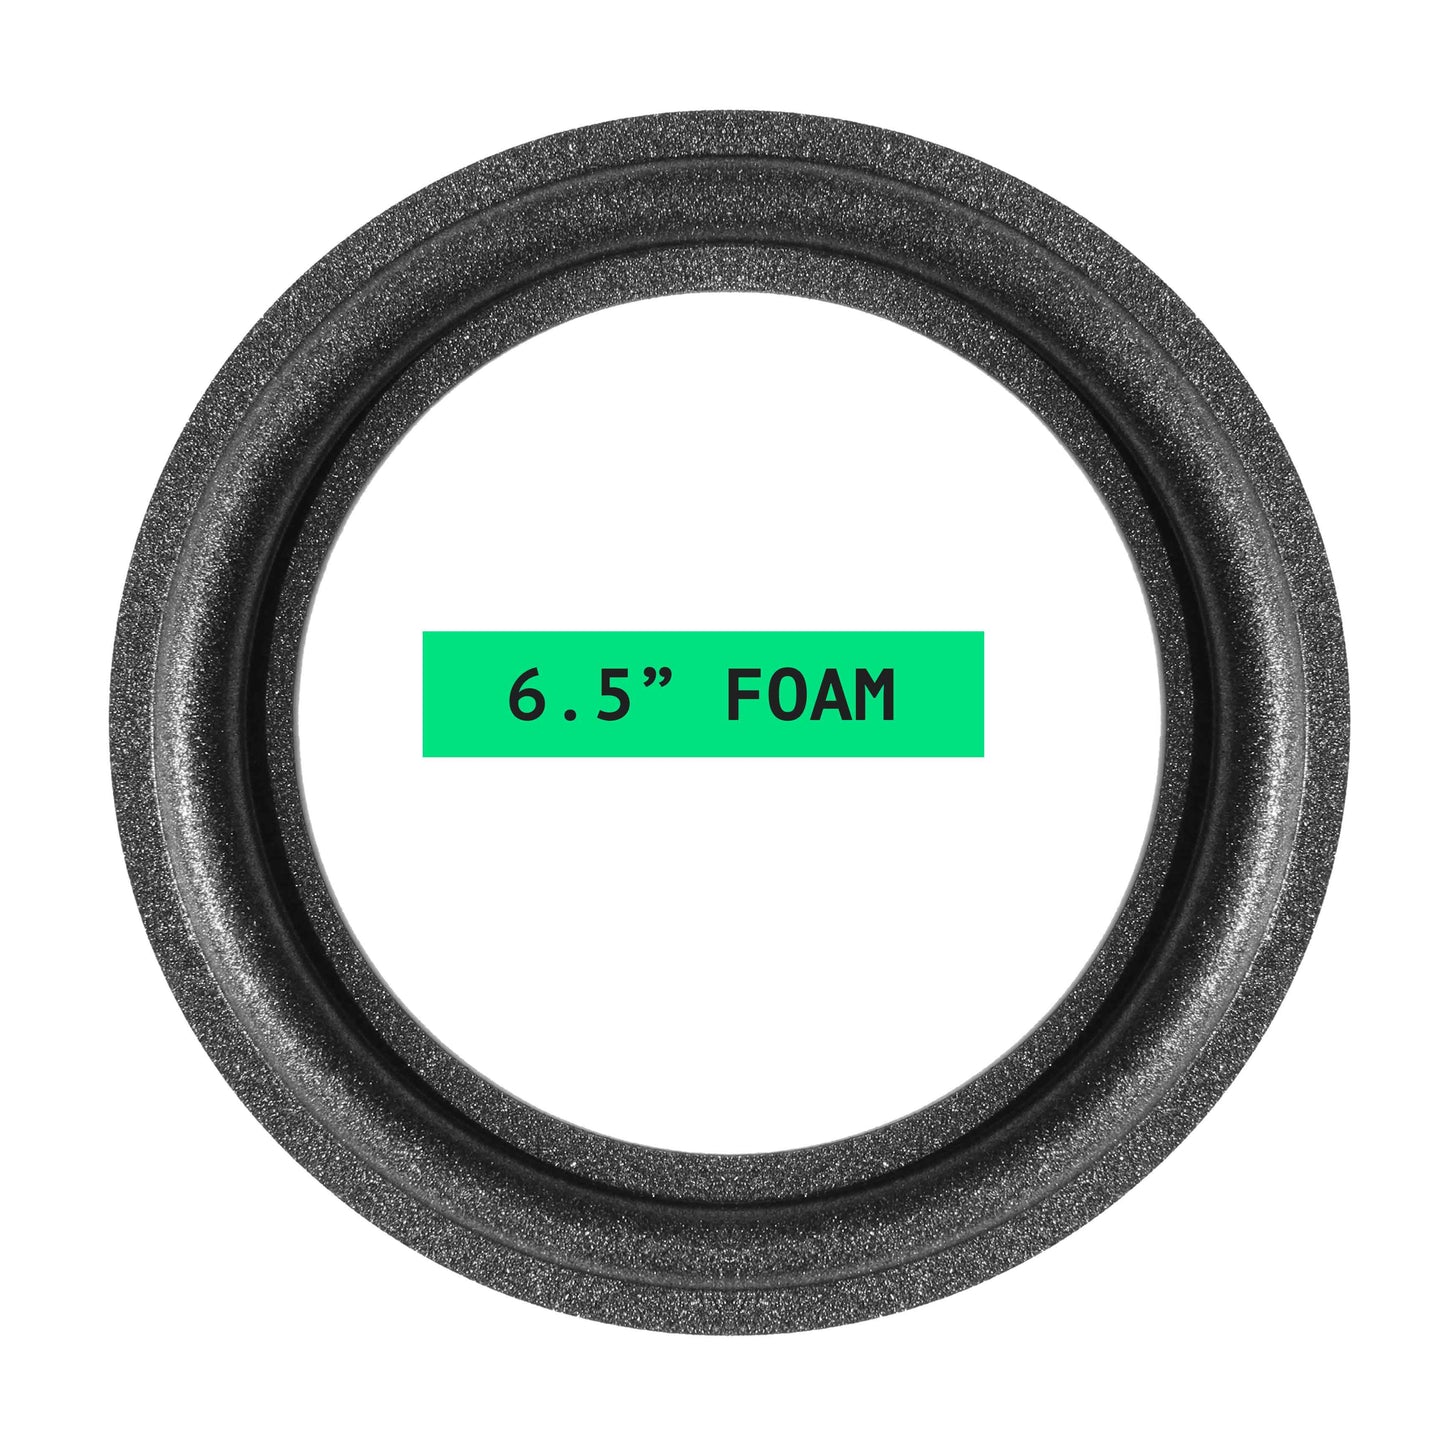 Tannoy 6.5" Foam Repair Kit - OD:157MM ID:105MM